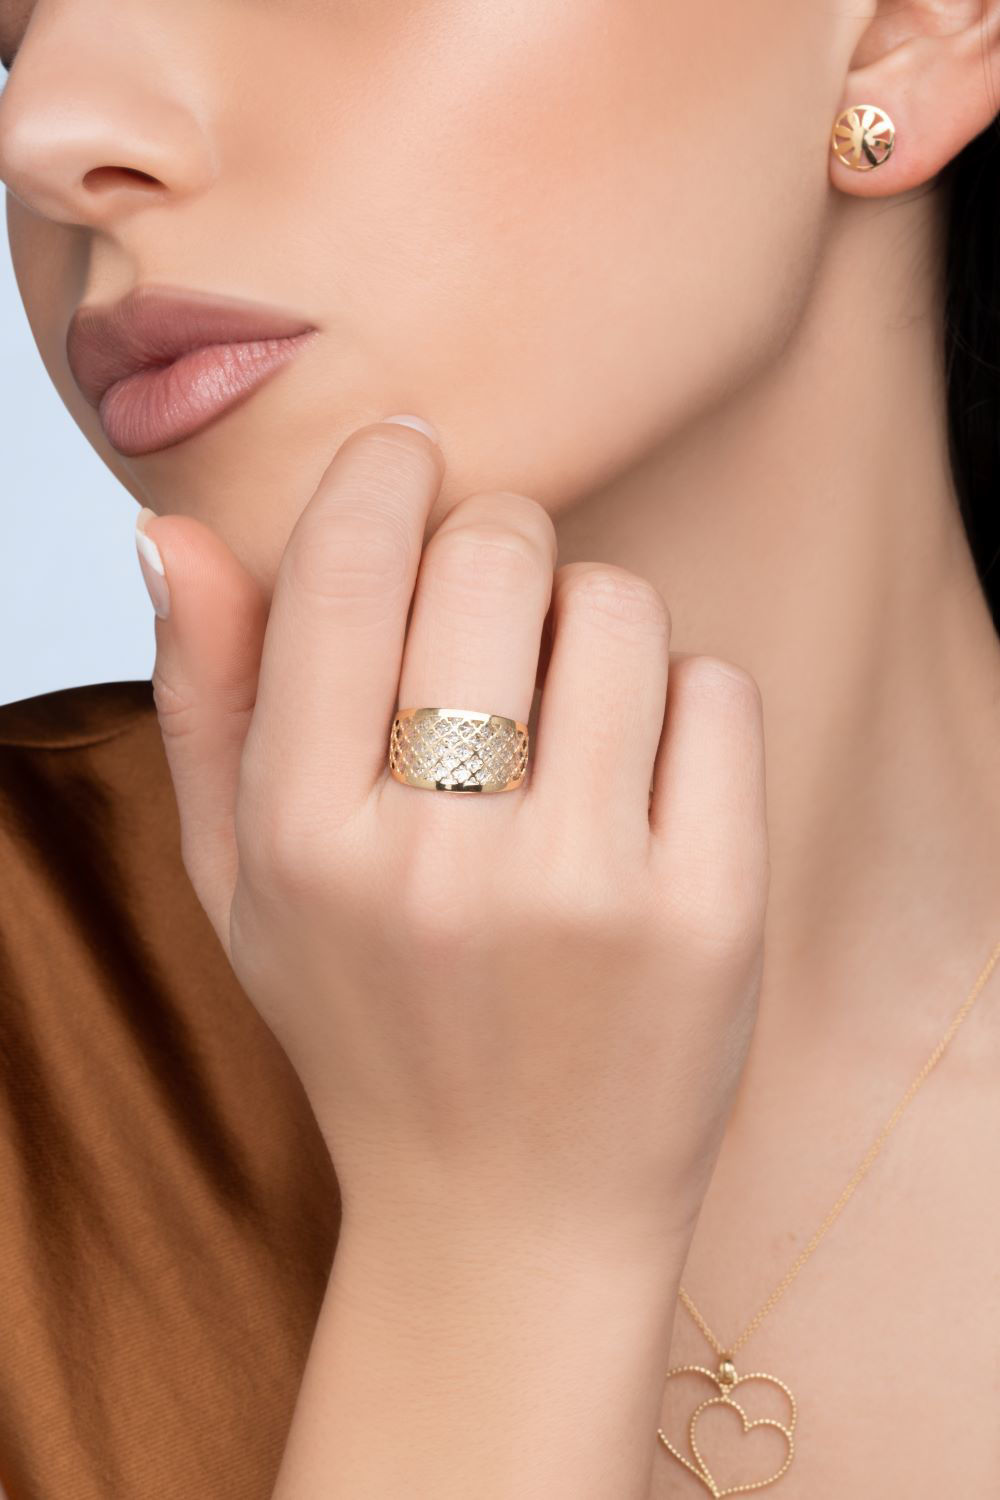 Δαχτυλίδι Arabesque από χρυσό και λευκό χρυσό 18K